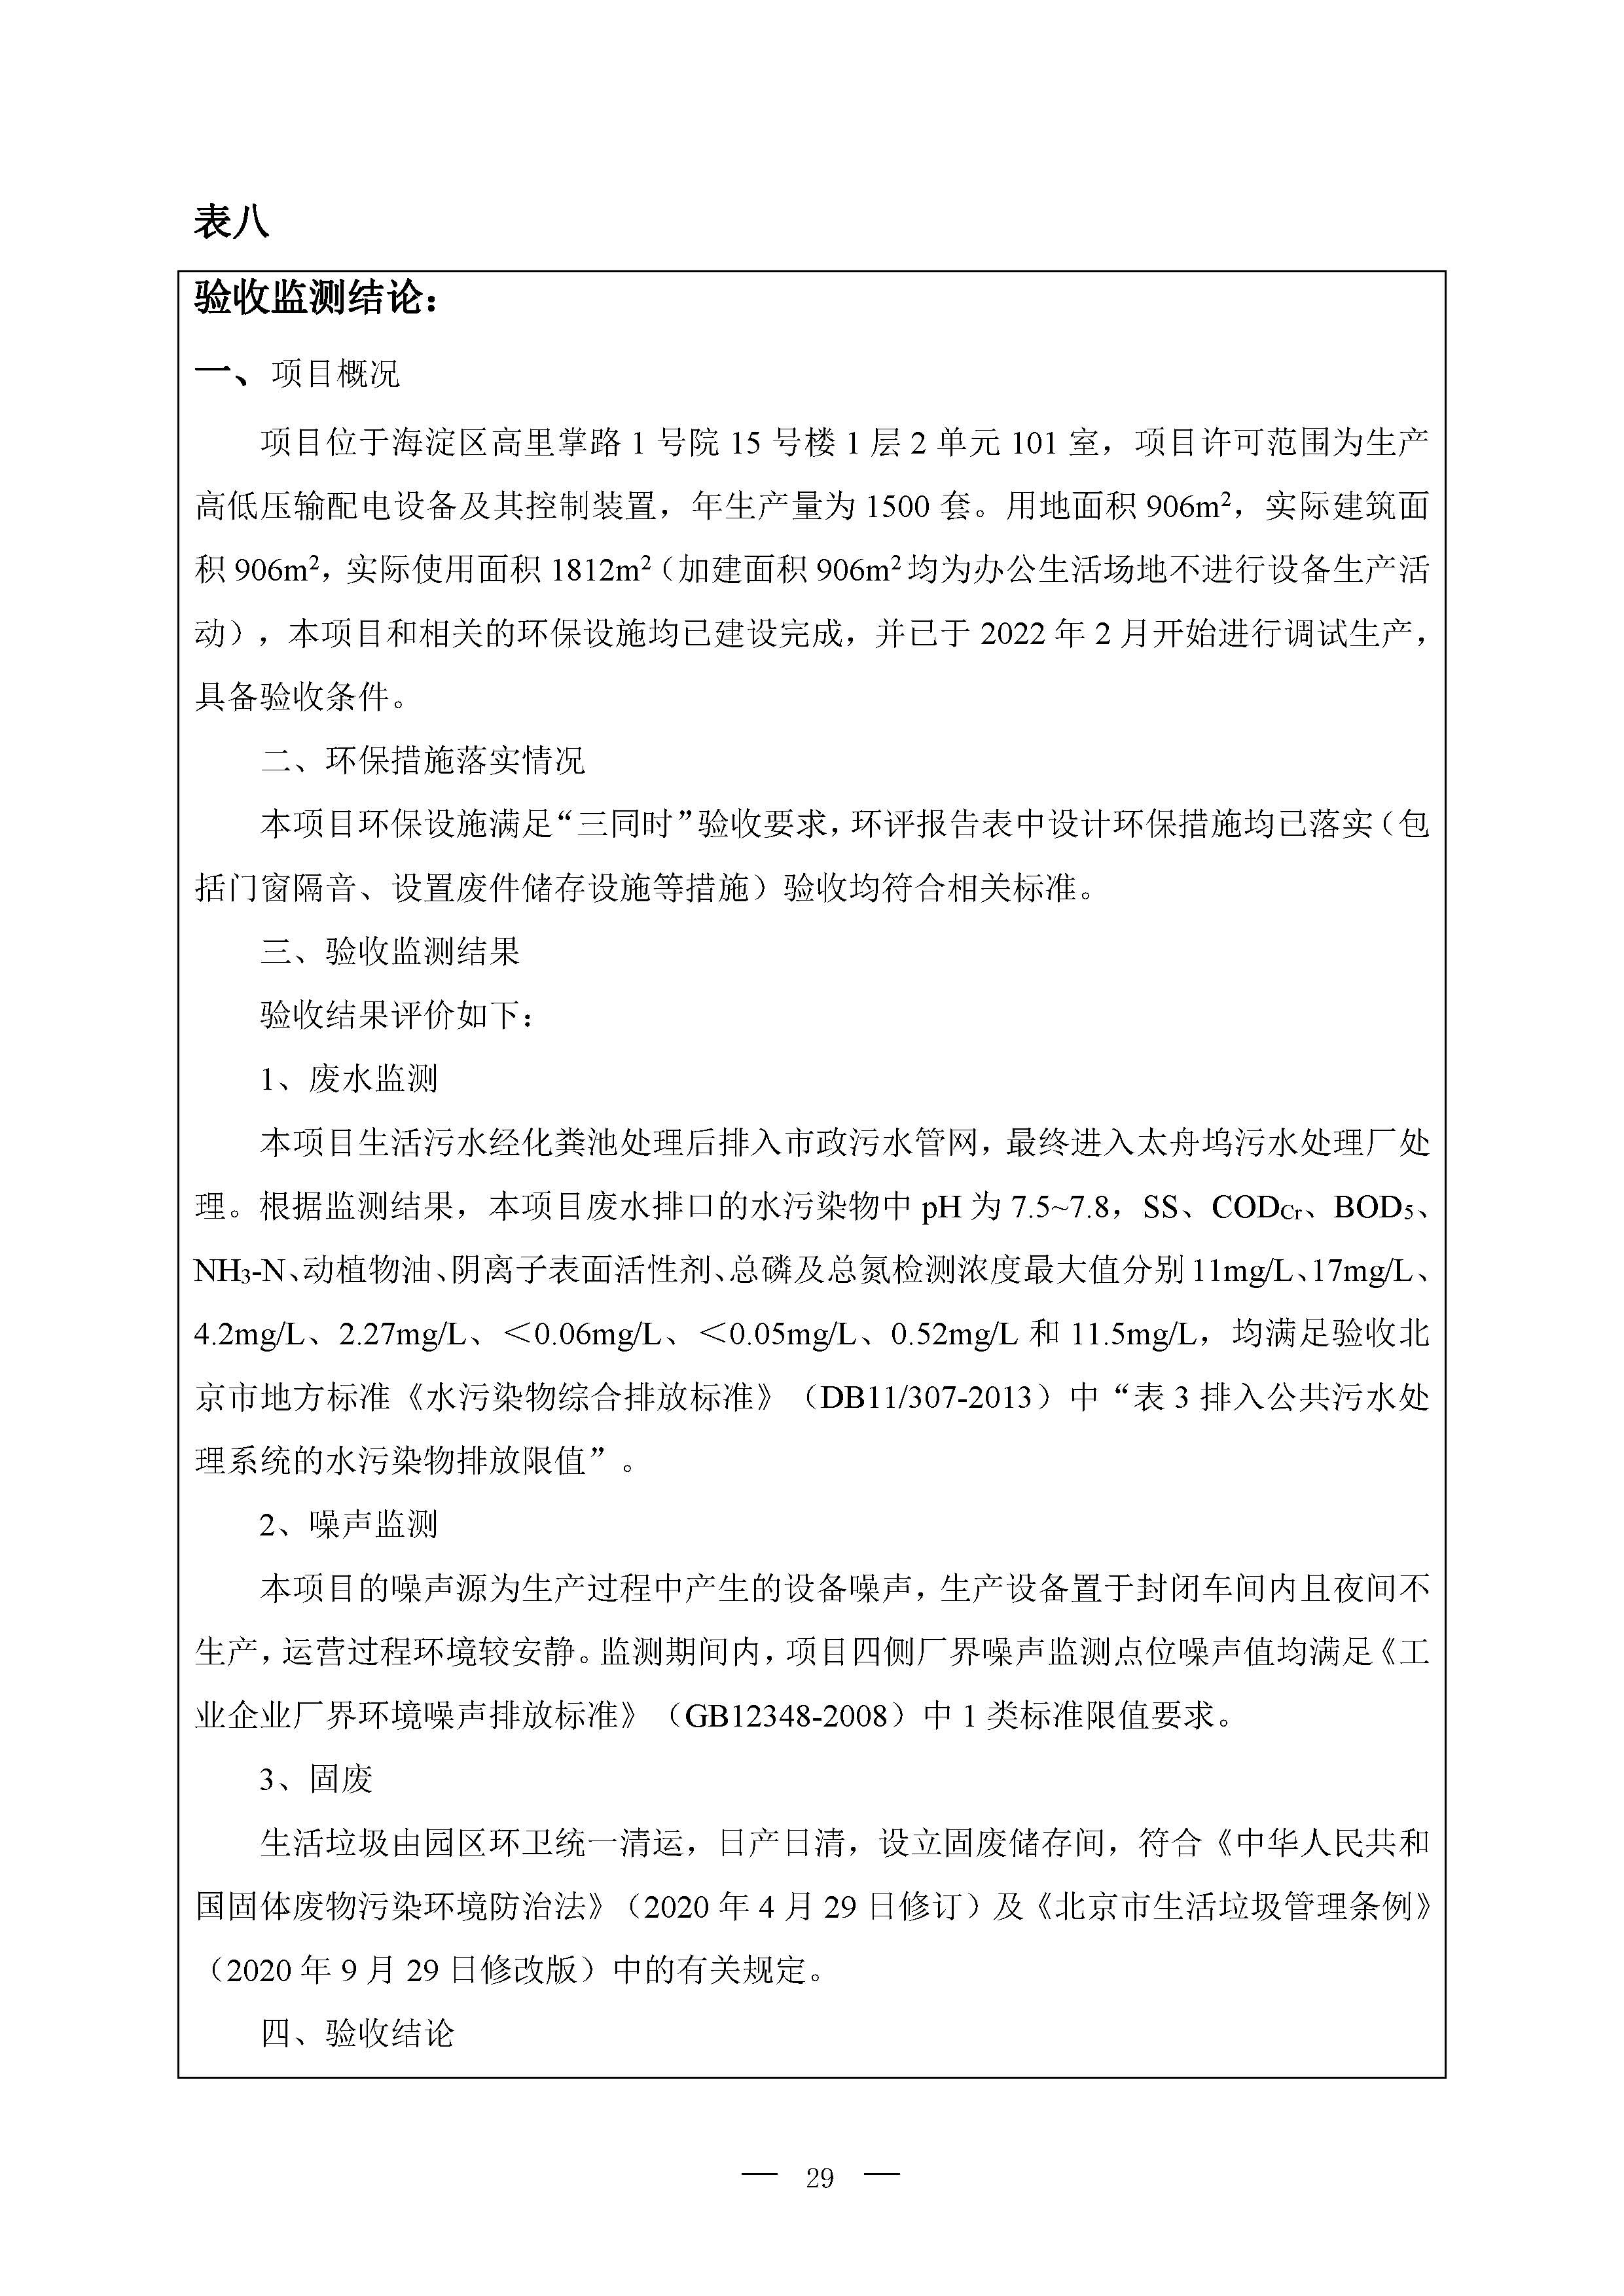 北京博瑞莱智能科技集团有限公司项目竣工环境保护验收监测报告全本公示(图33)